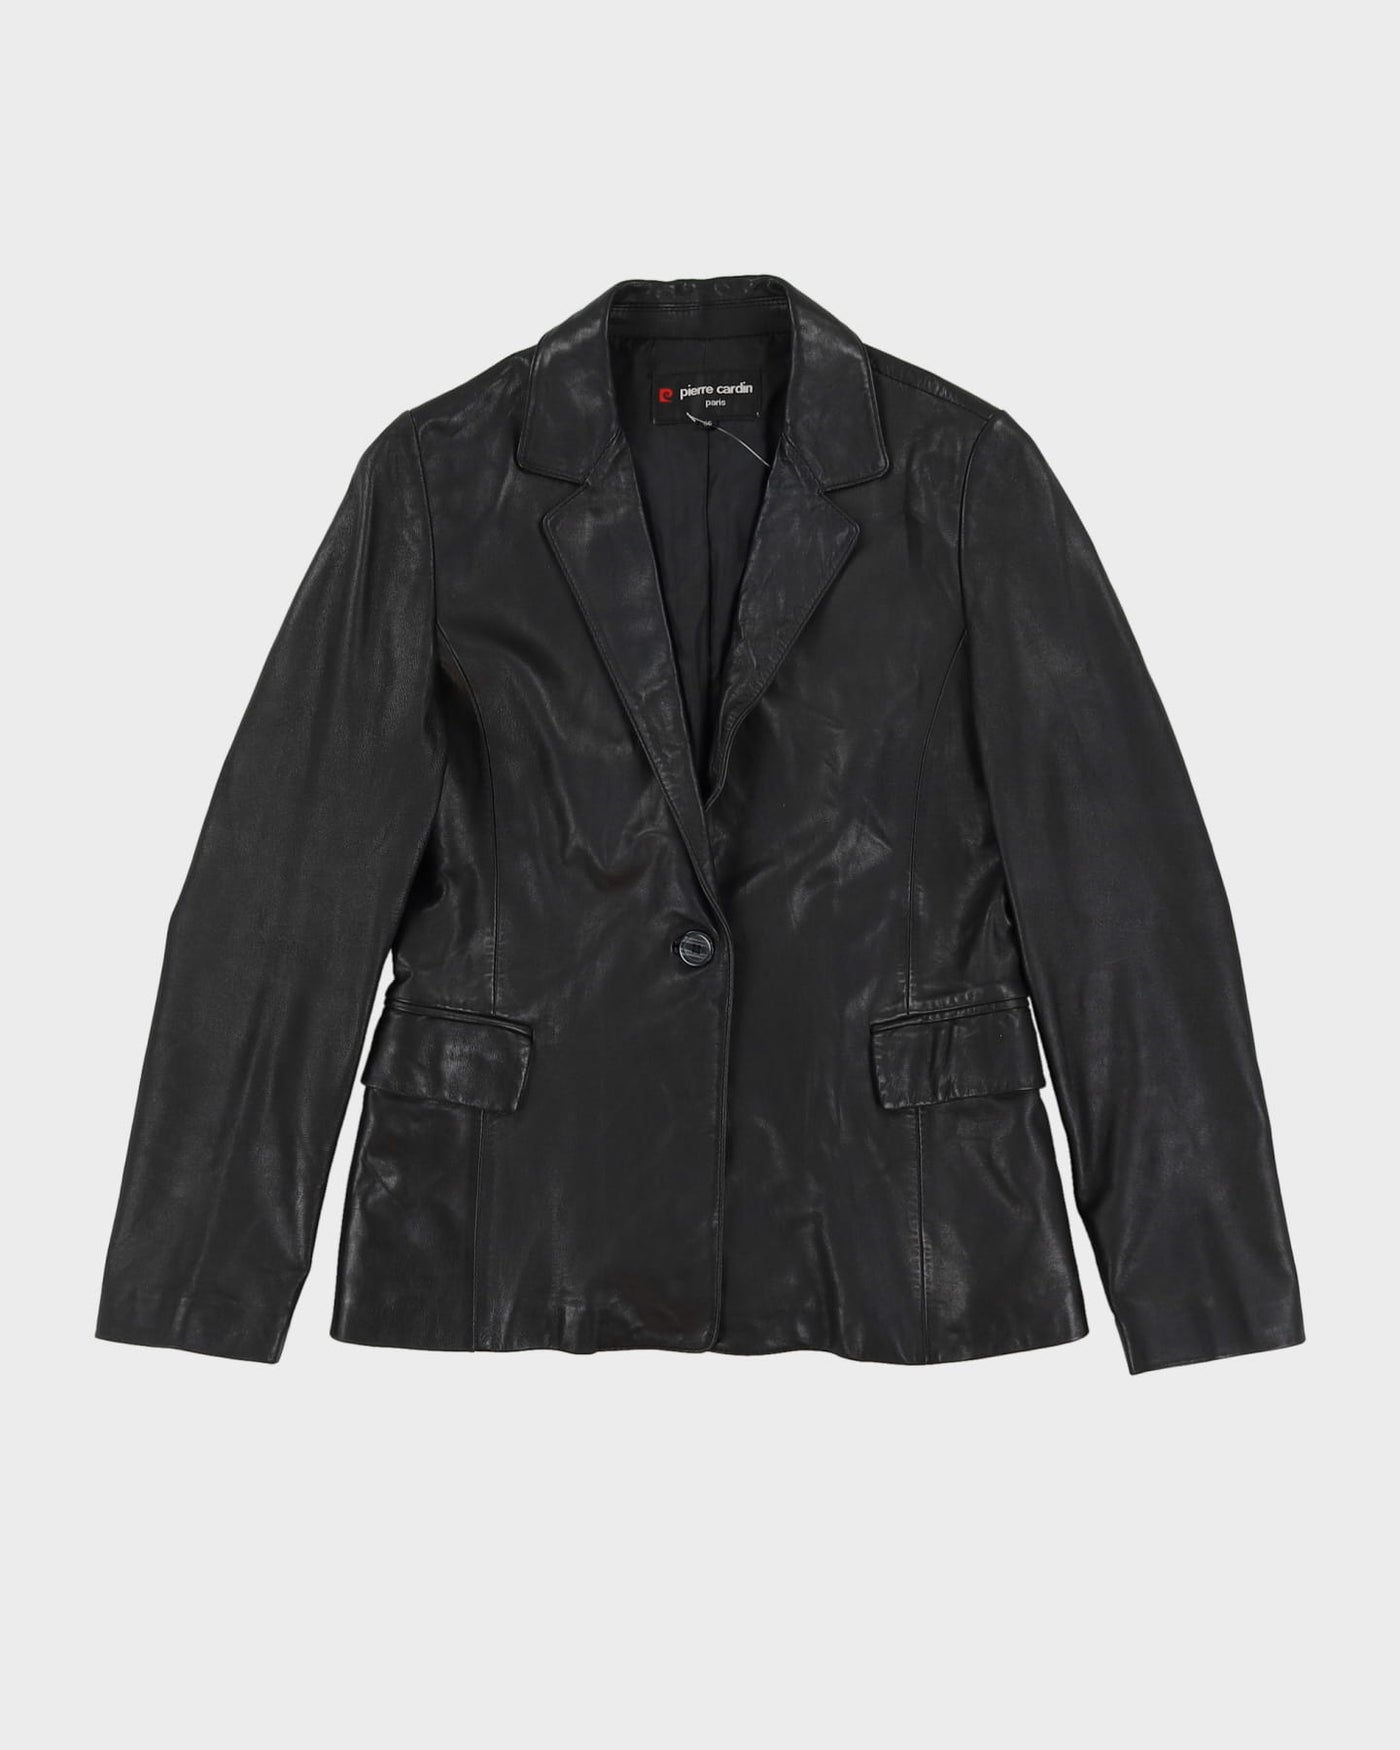 Pierre Cardin Black Blazer Blazer jacket - S